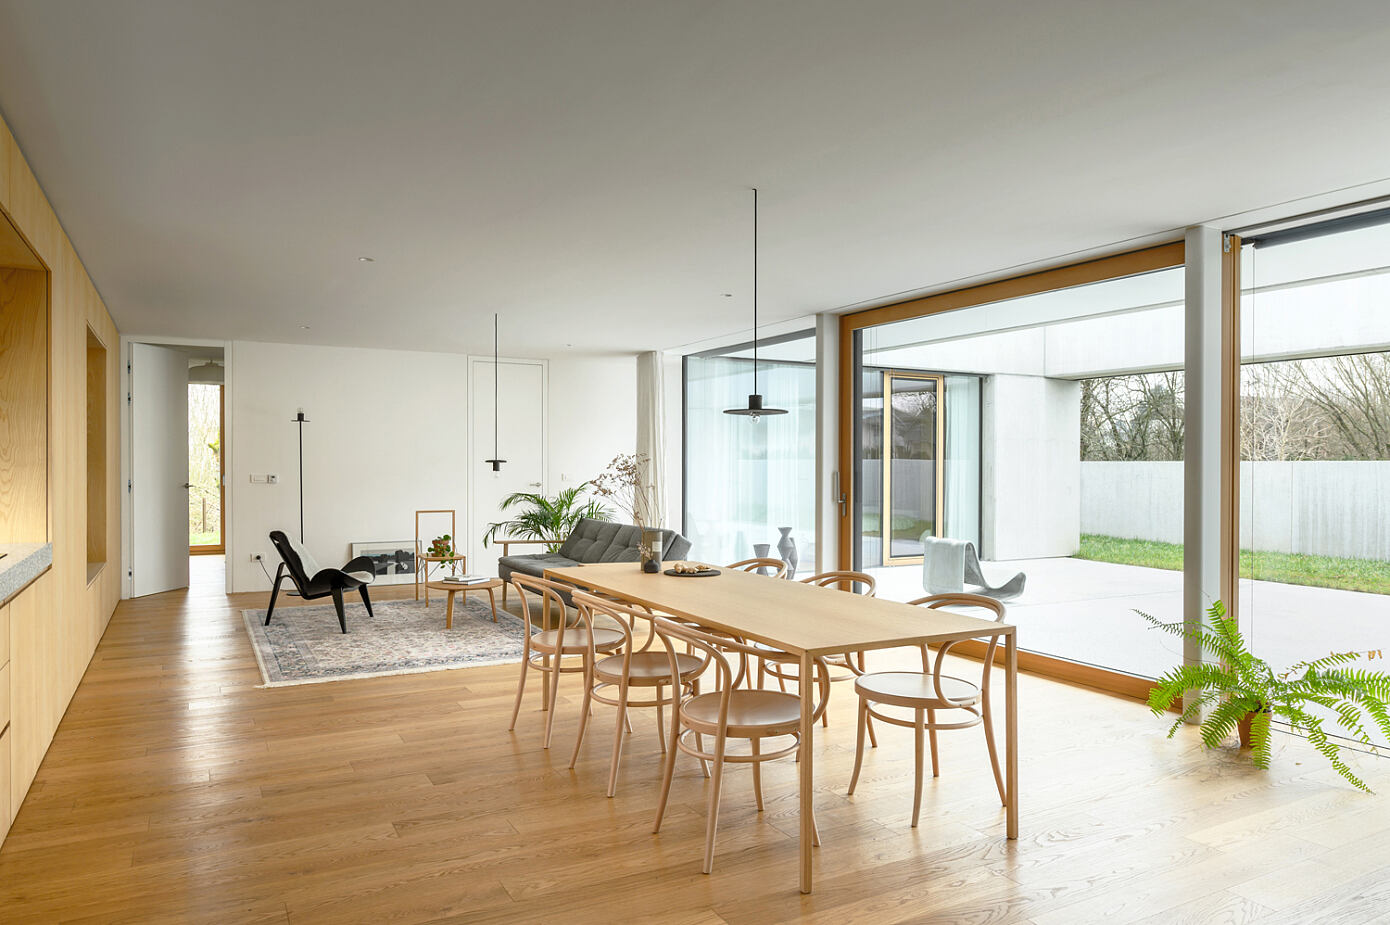 House for a Ceramic Designer by Arhitektura d.o.o.